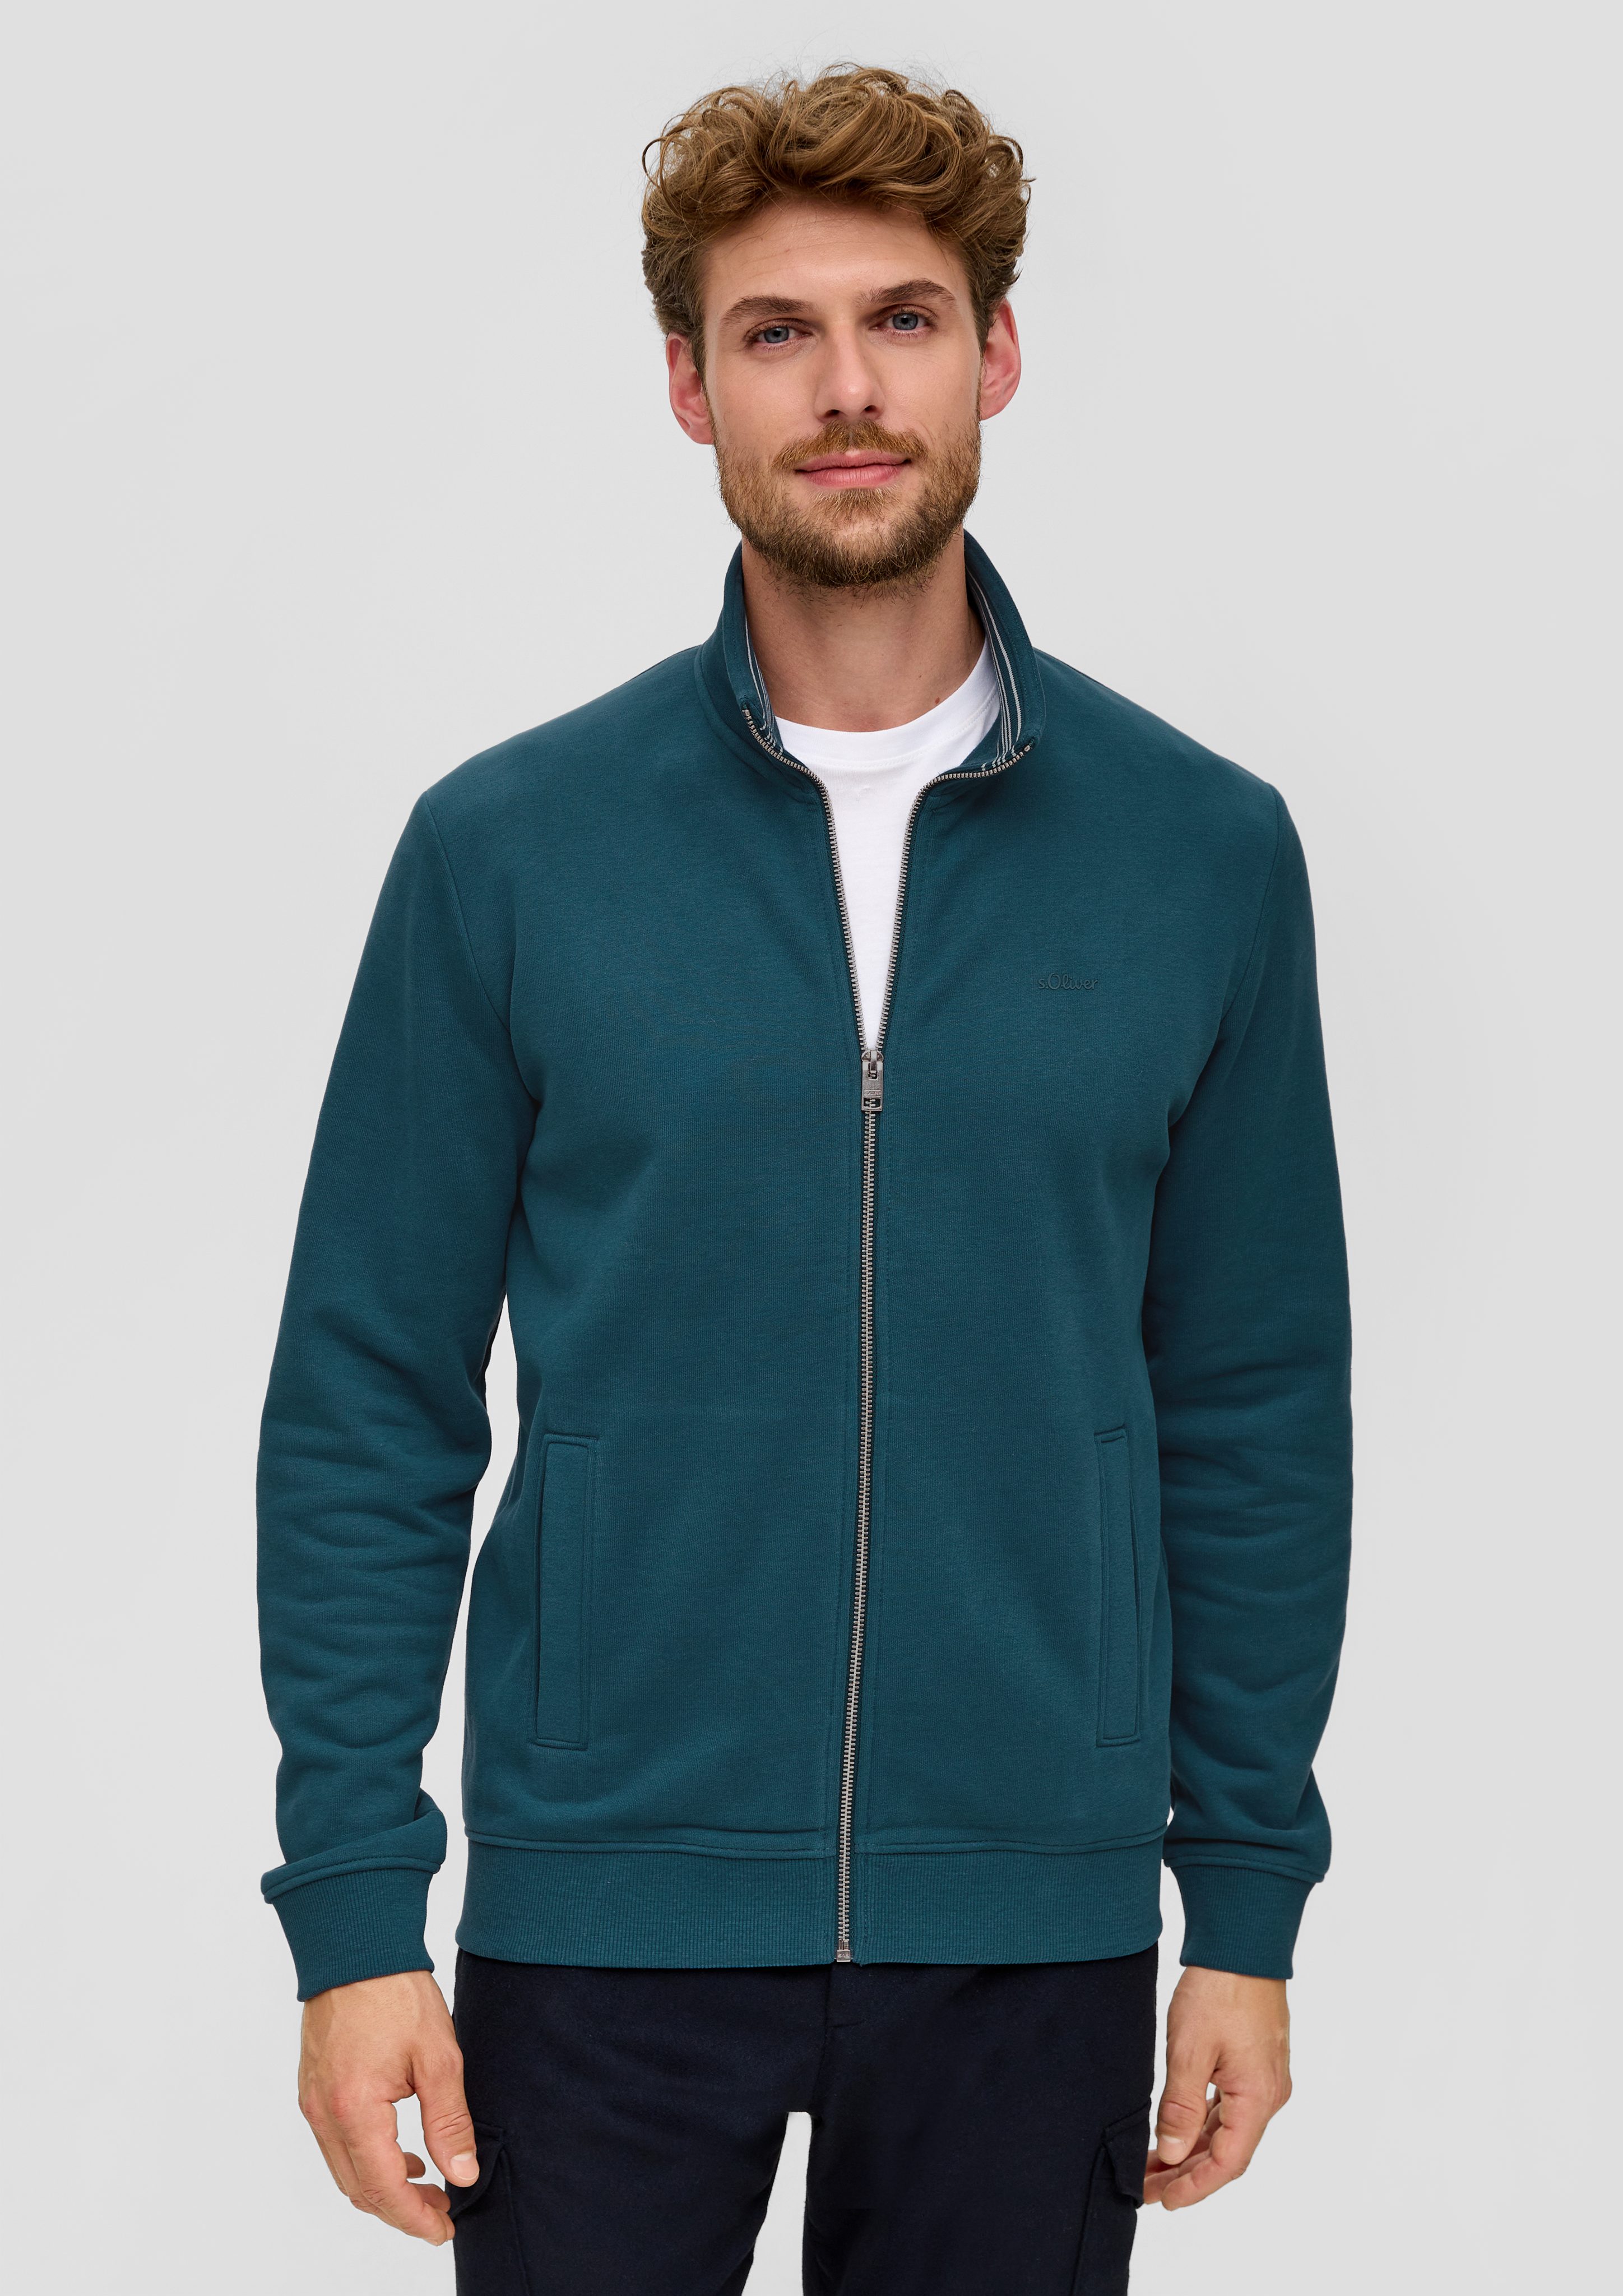 s.Oliver Allwetterjacke Sweatshirt-Jacke mit Stehkragen Logo, Streifen-Detail dunkles türkis